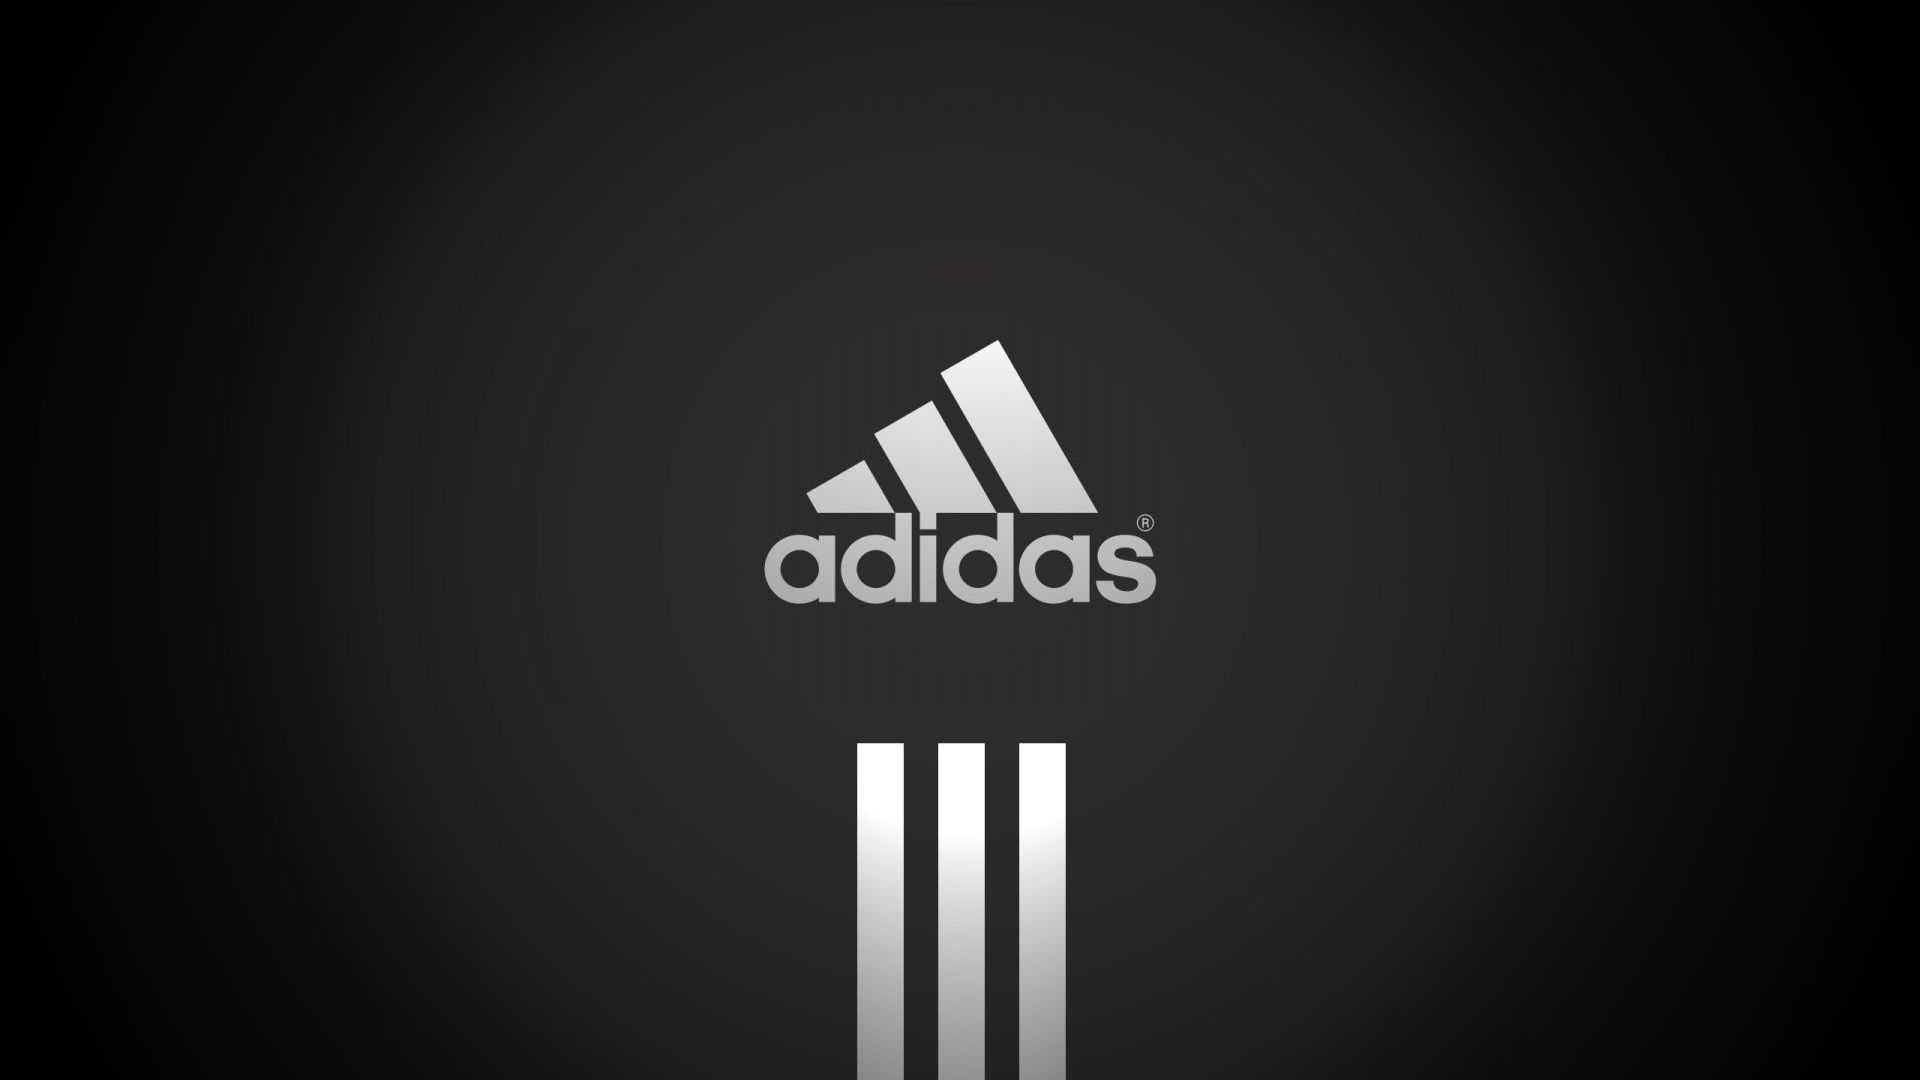 Adidas Black 1080p HD Logo Desktop Wallpaper Places To Visit In